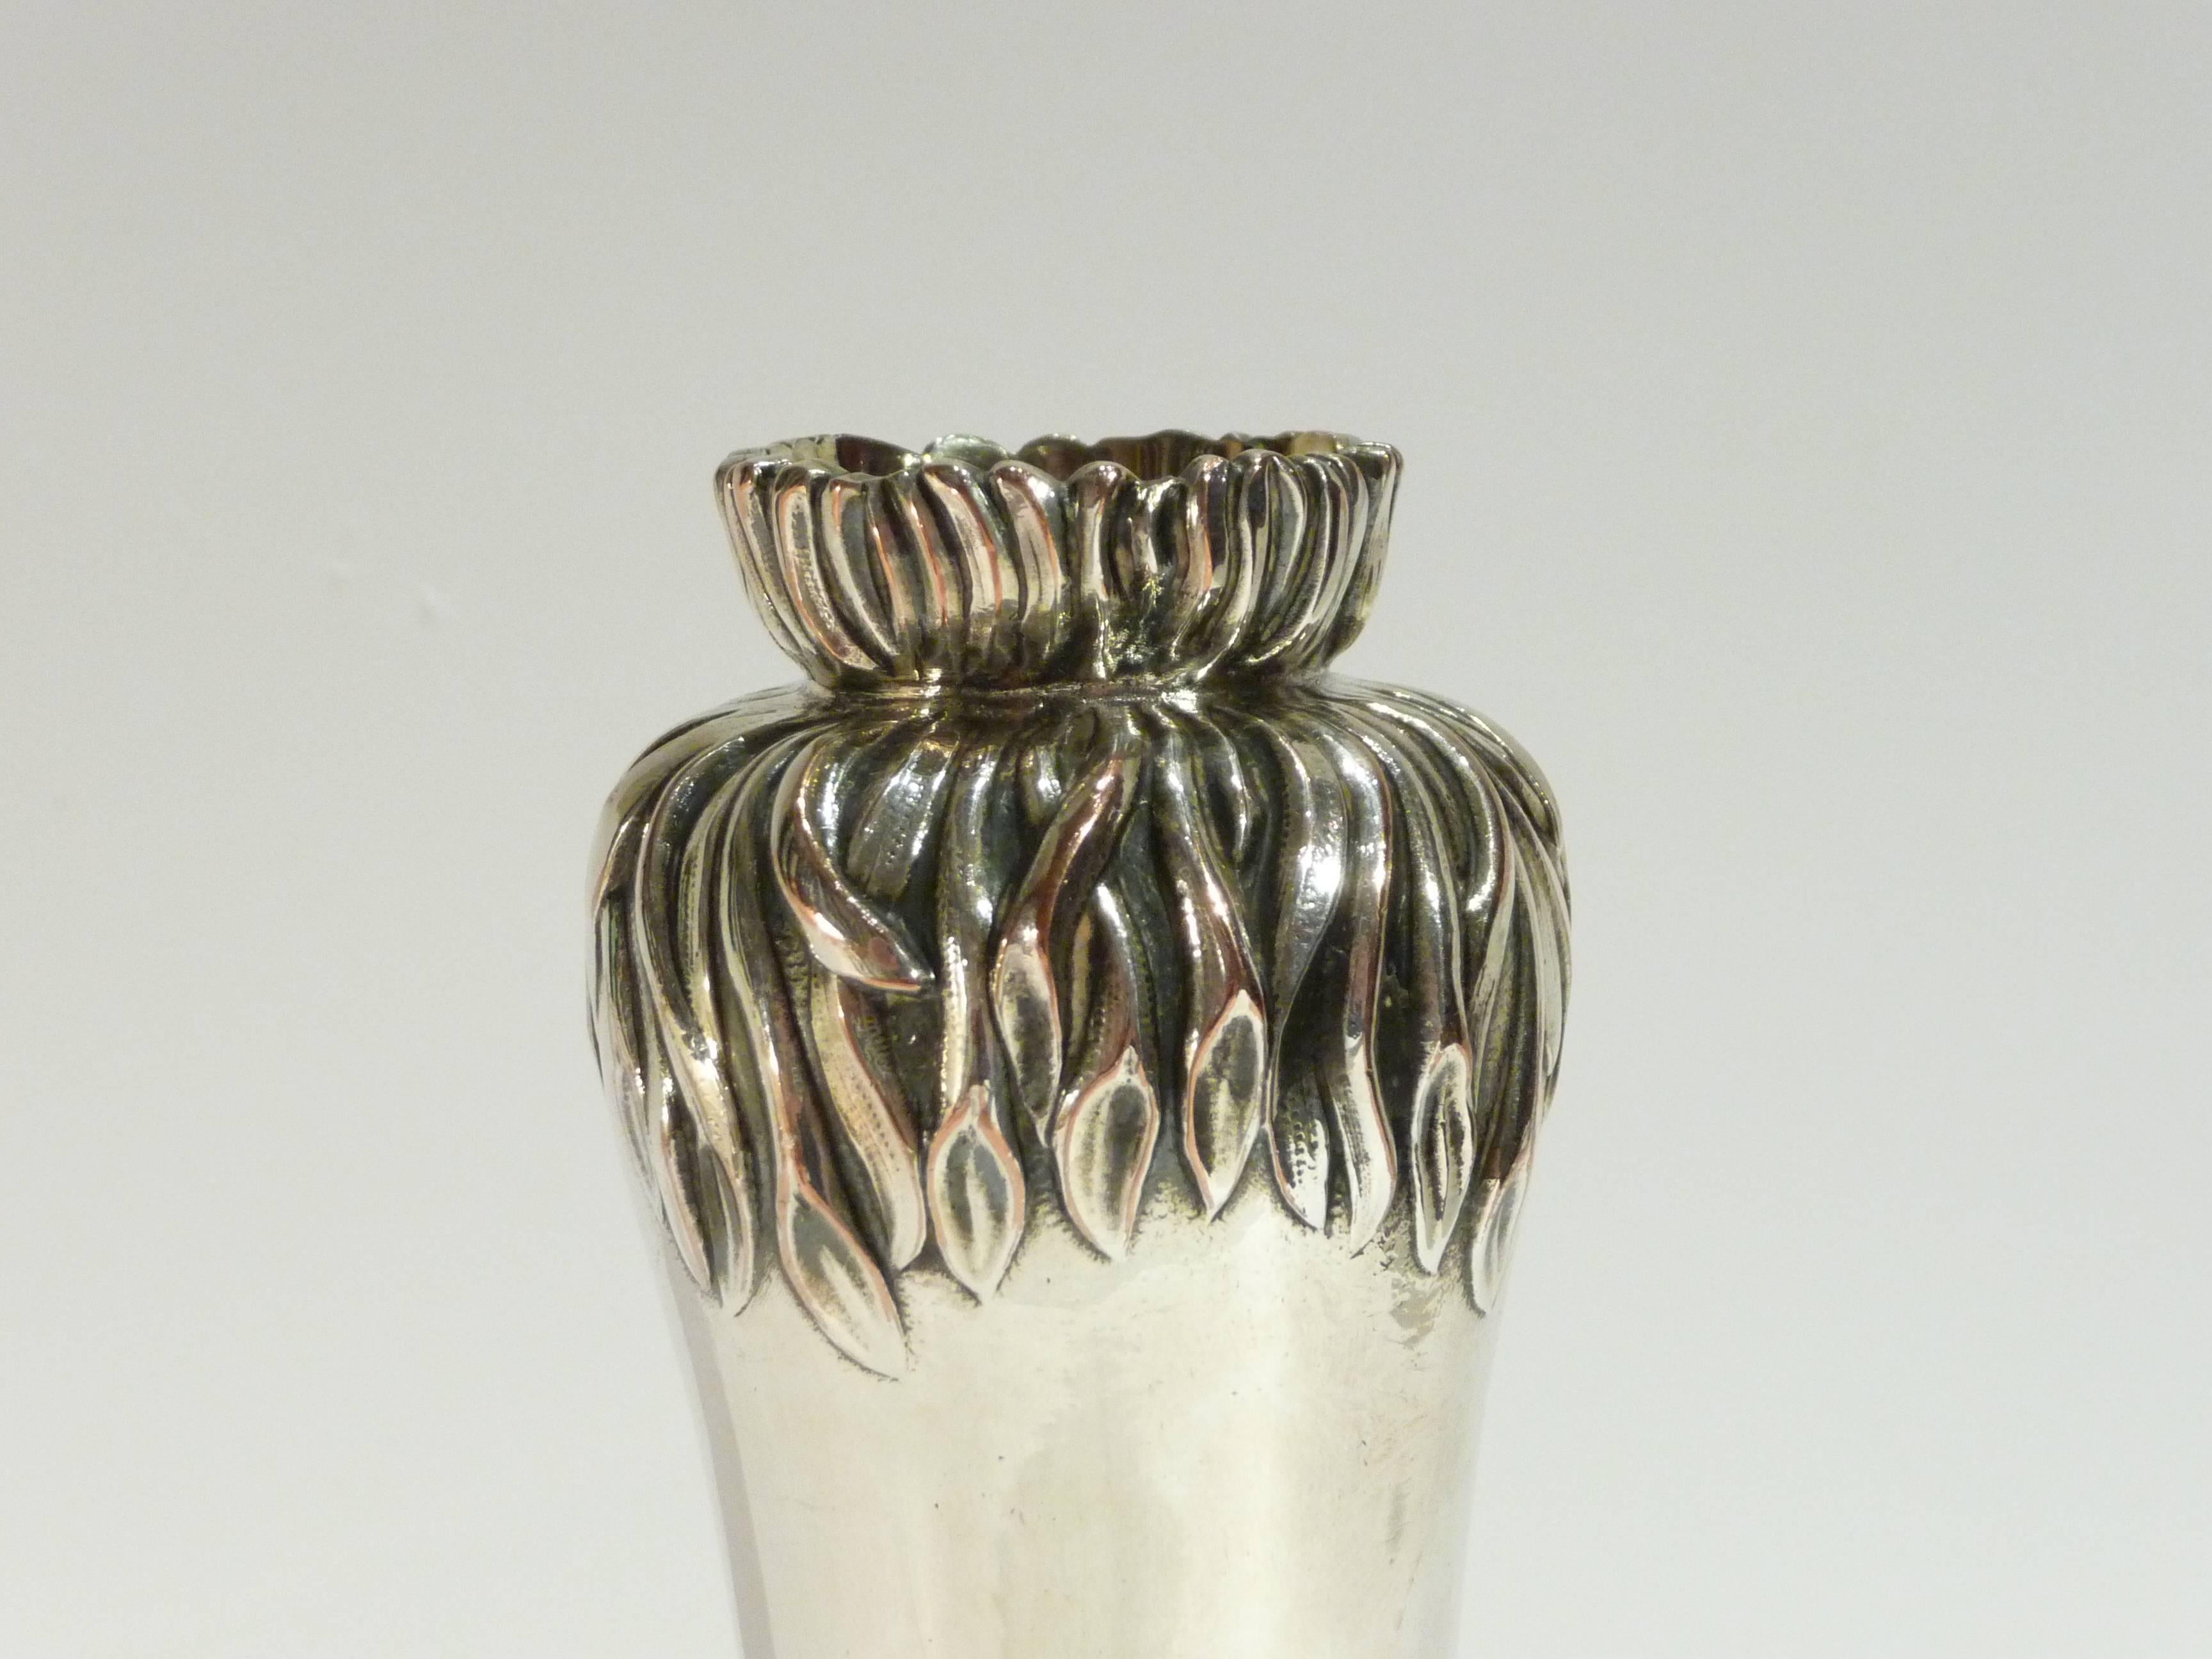 Christofle & Cie.
An Art Nouveau silvered bonze vase.
Signed.
Literature: The Paris Salons, vol. 5 ill. p. 88.